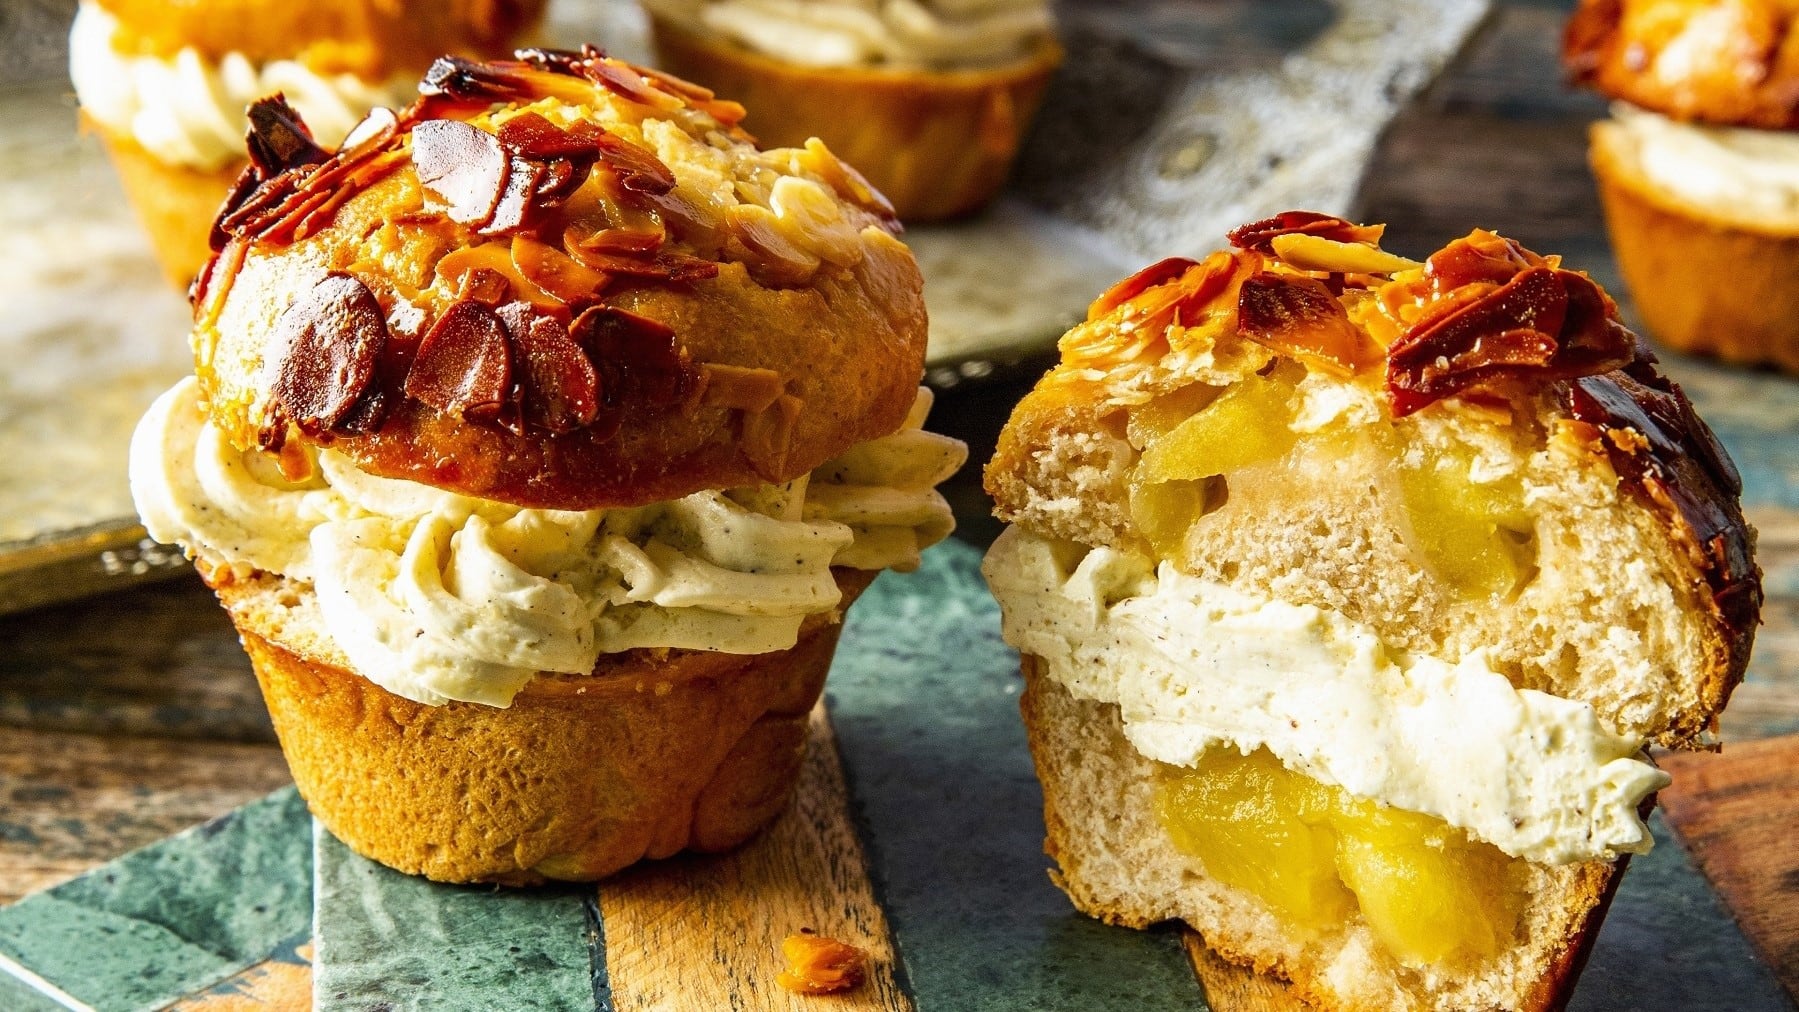 Apfel-Bienenstich-Muffins, angeschnitten serviert auf einem einfachen, bunten Holzbrett, garniert mit karamellisierten Mandeln.